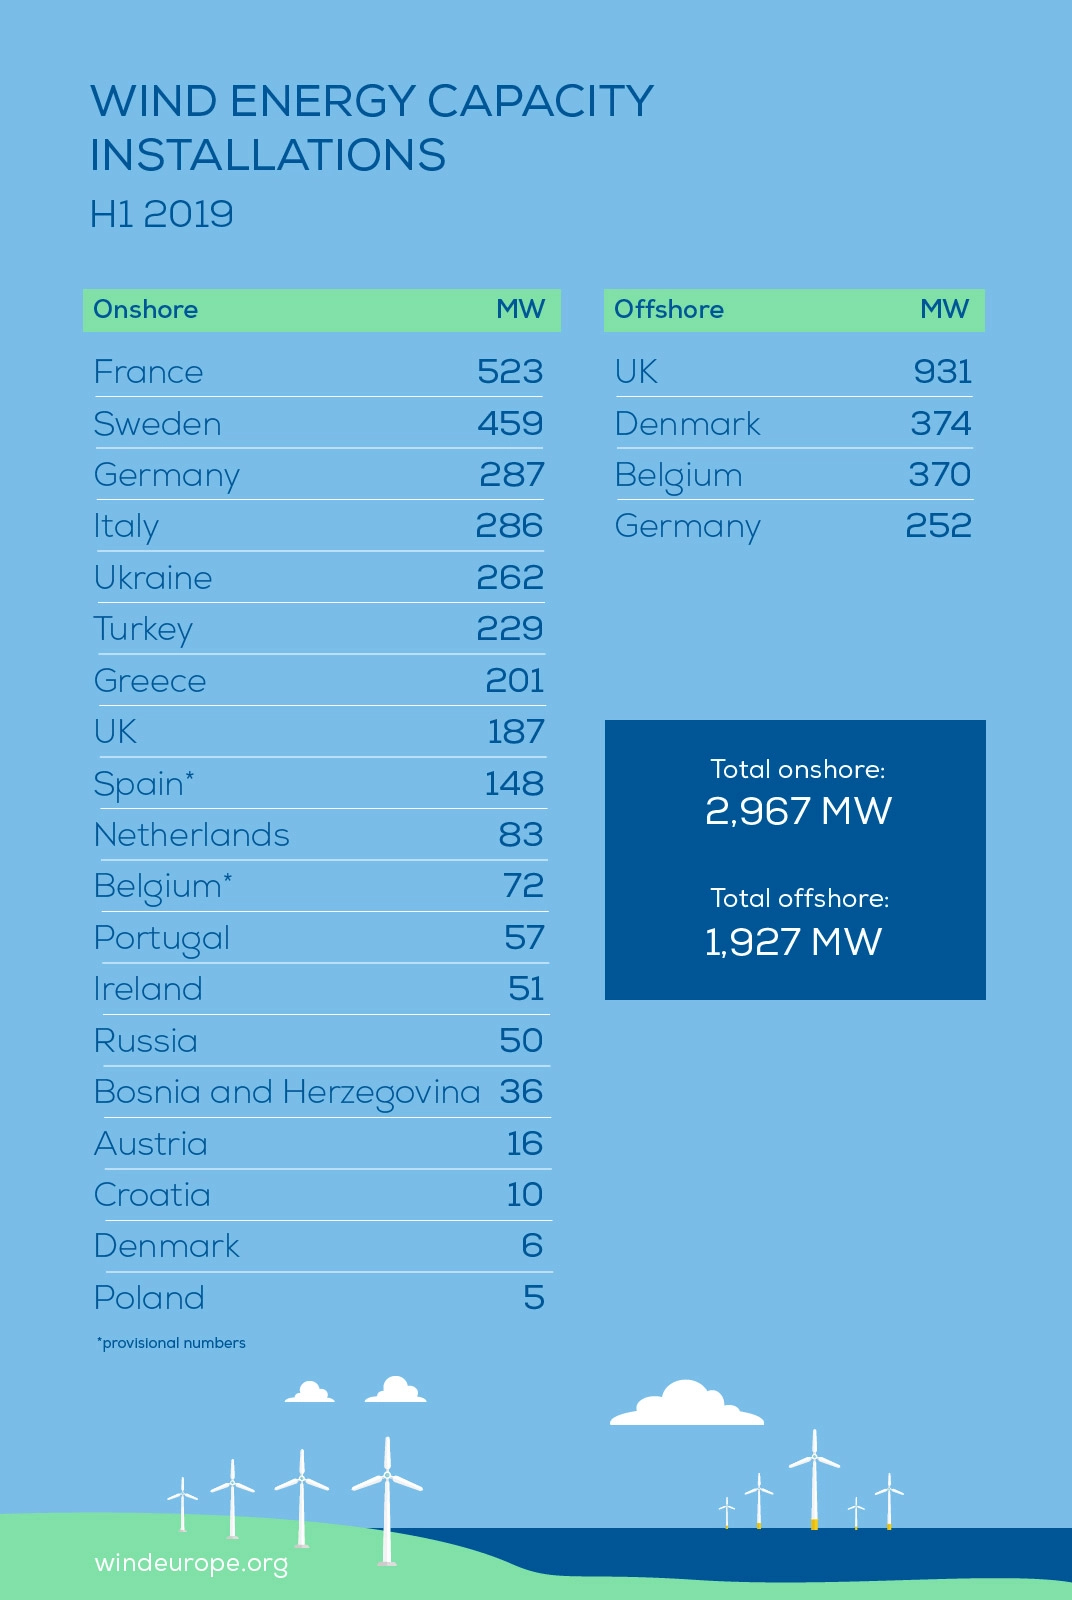 Europa instala 4,9 GW de nueva capacidad de energía eólica en la primera mitad de 2019